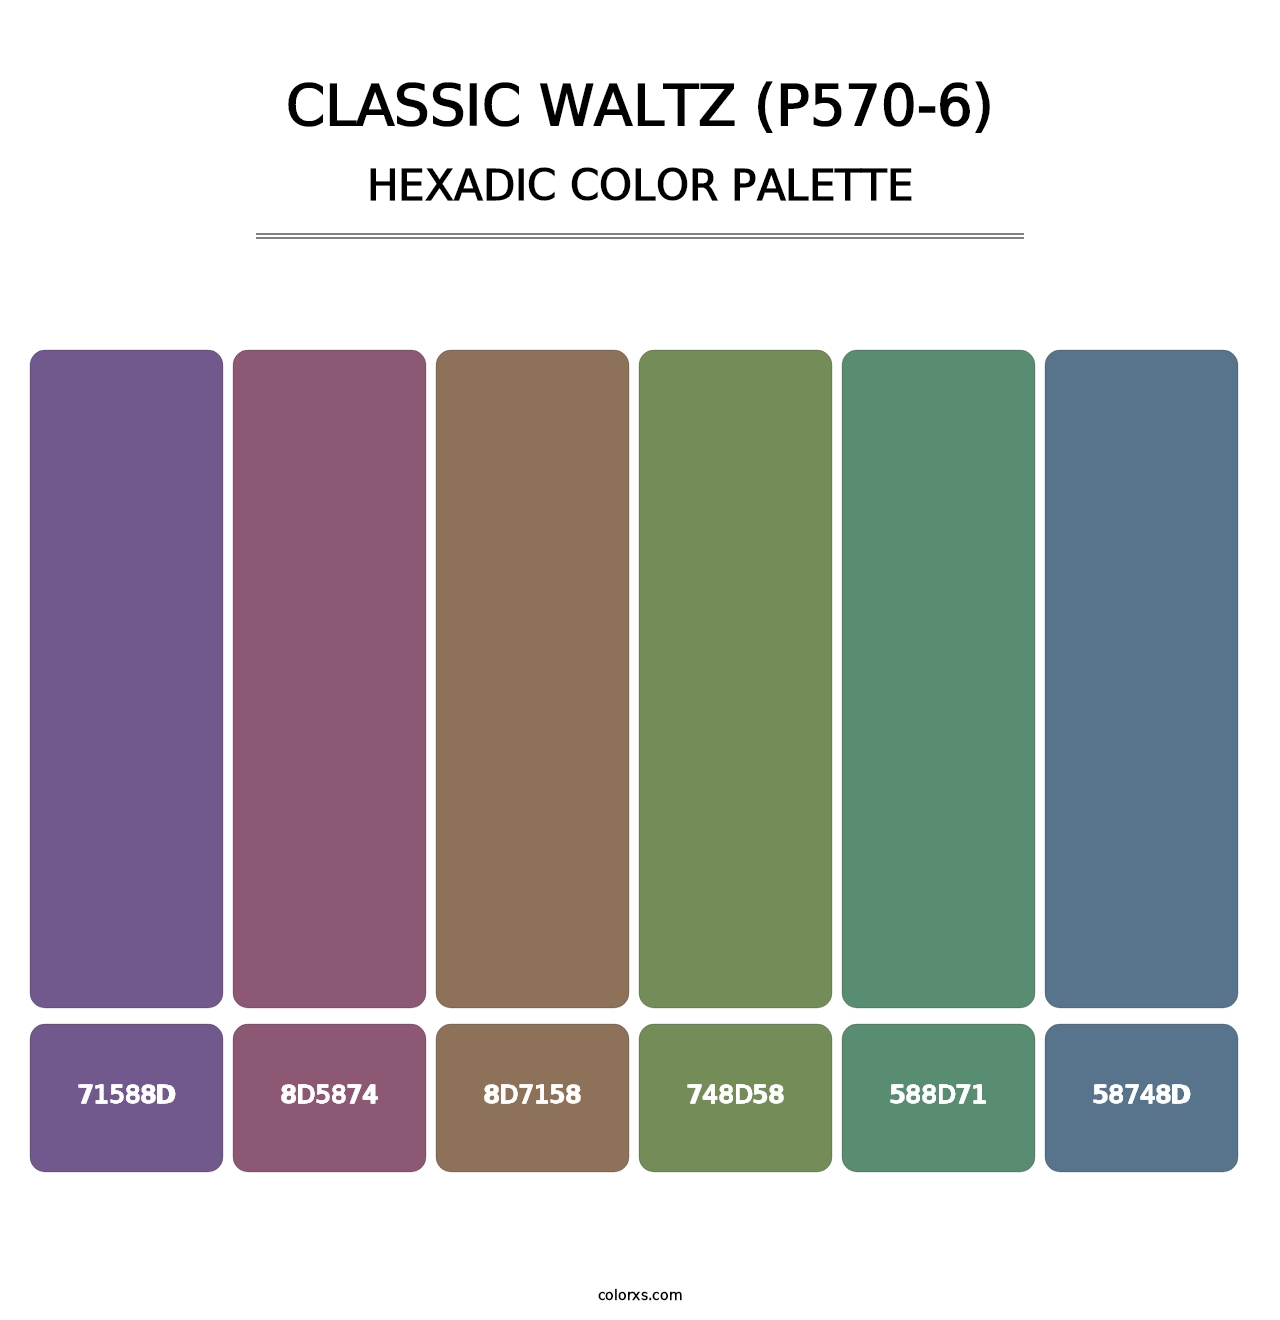 Classic Waltz (P570-6) - Hexadic Color Palette